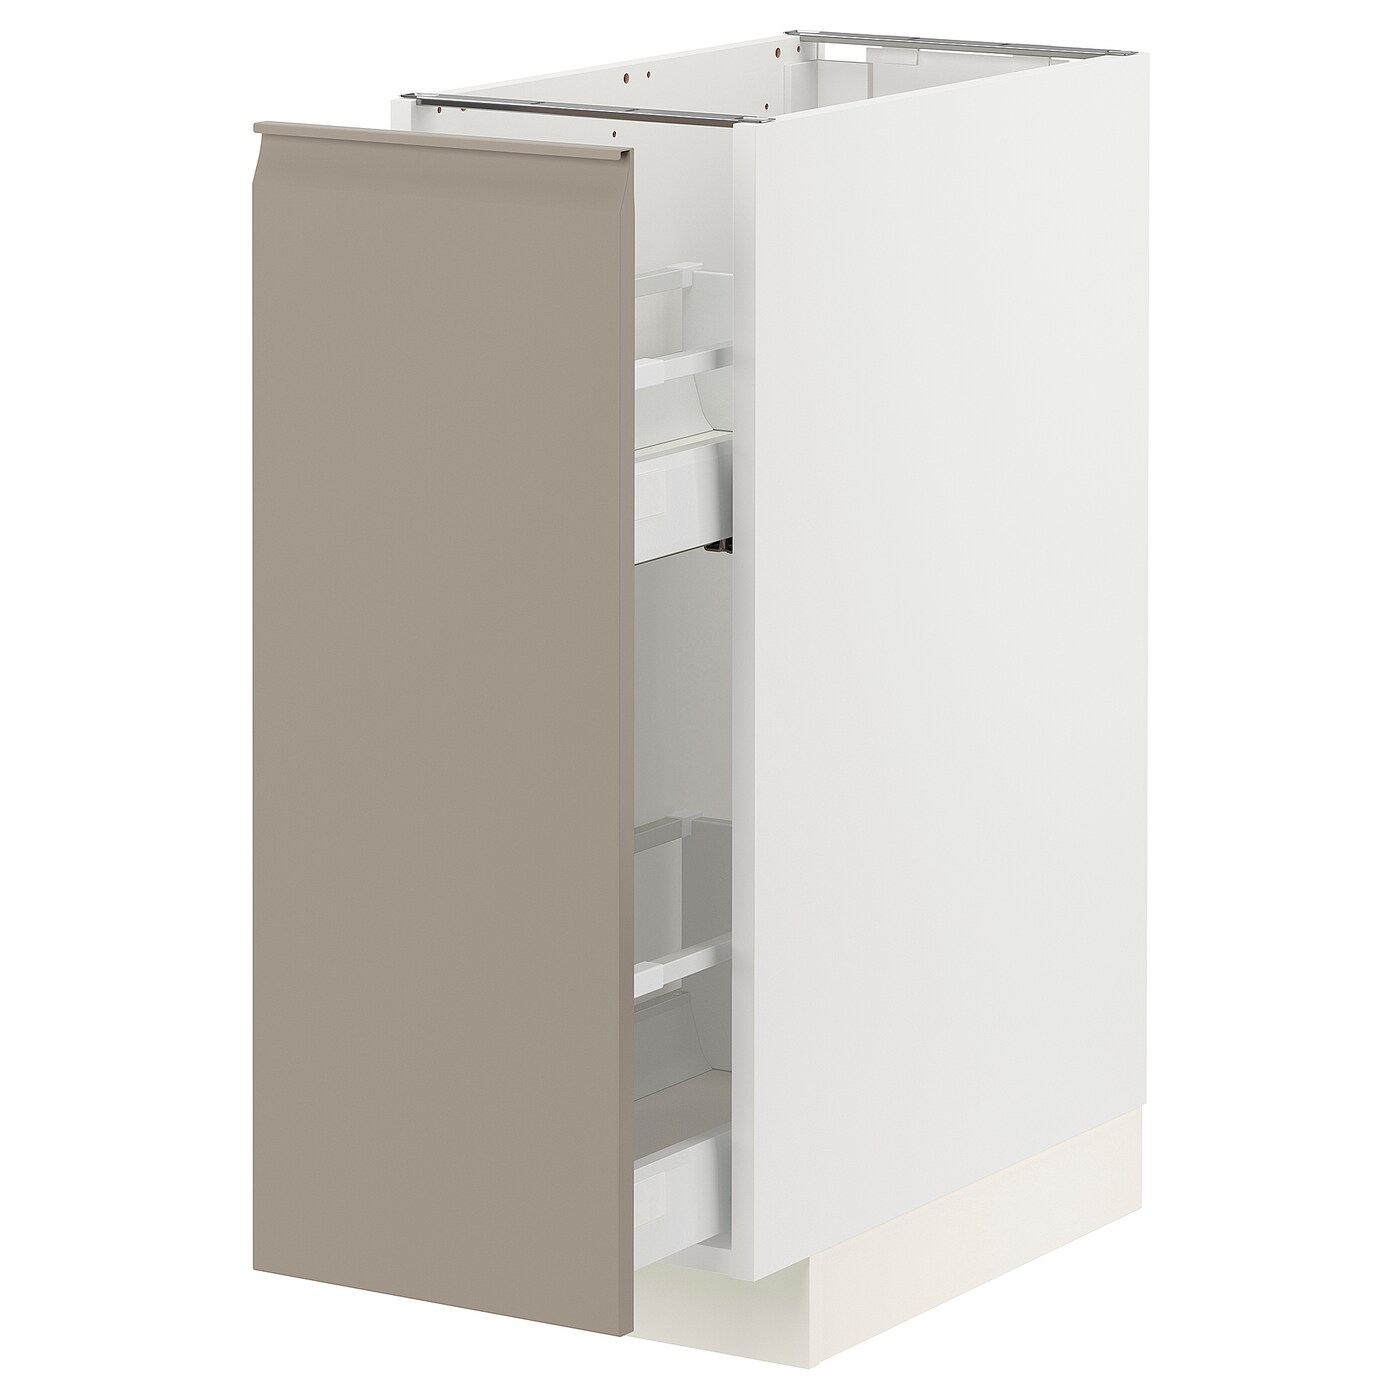 Напольный шкаф - IKEA METOD MAXIMERA, 88x62x30см, белый/темно-бежевый, МЕТОД МАКСИМЕРА ИКЕА